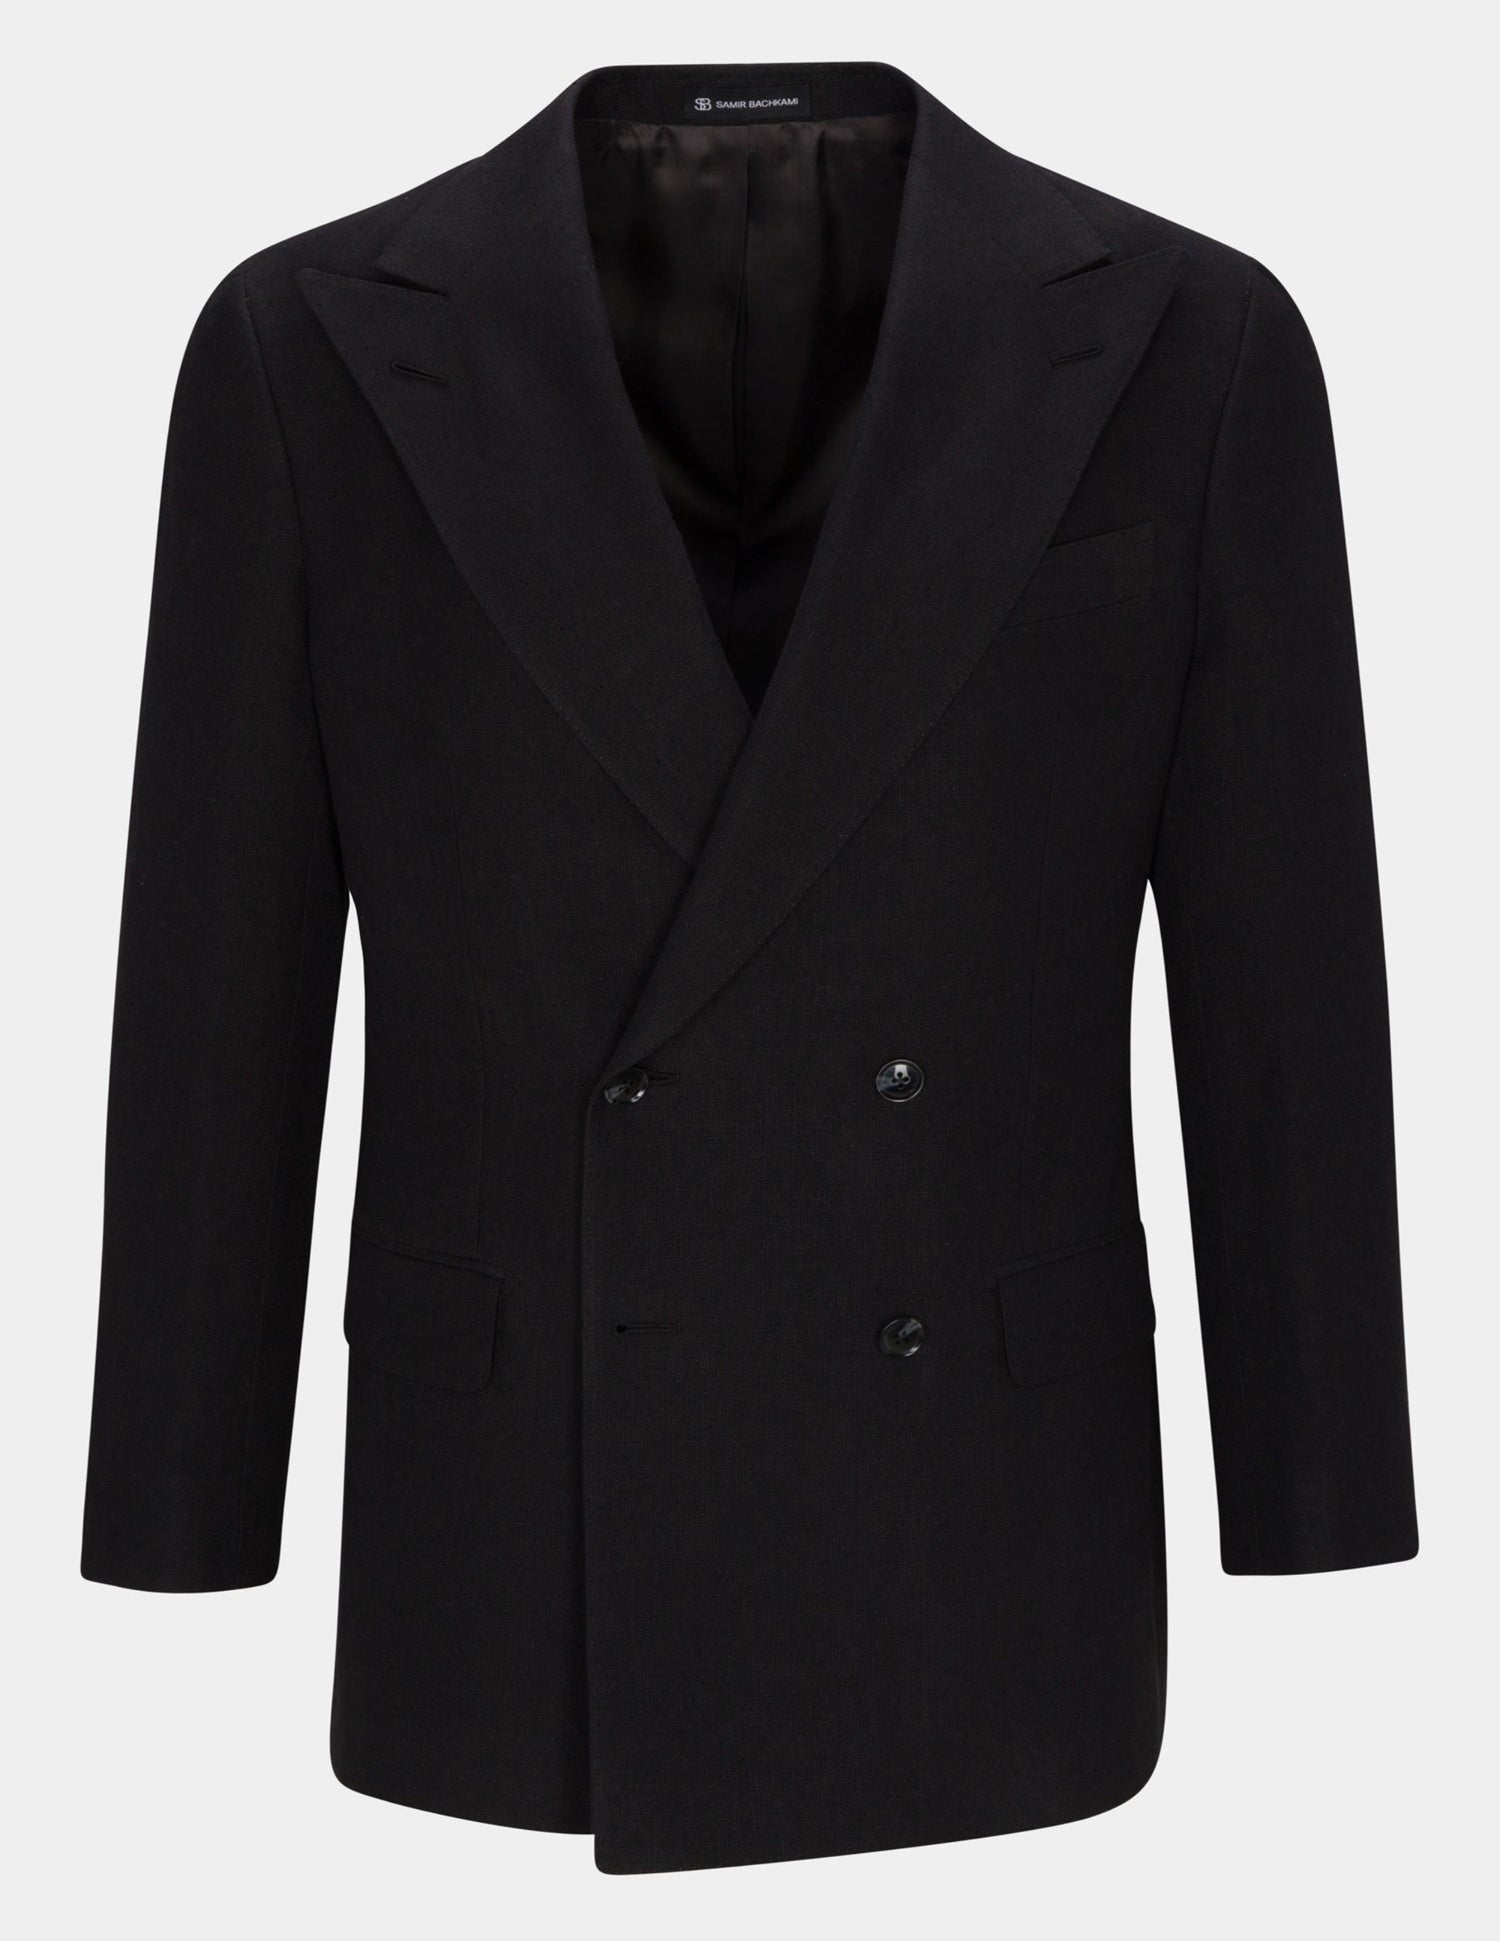 Light Black Velvet Single Breasted Suit